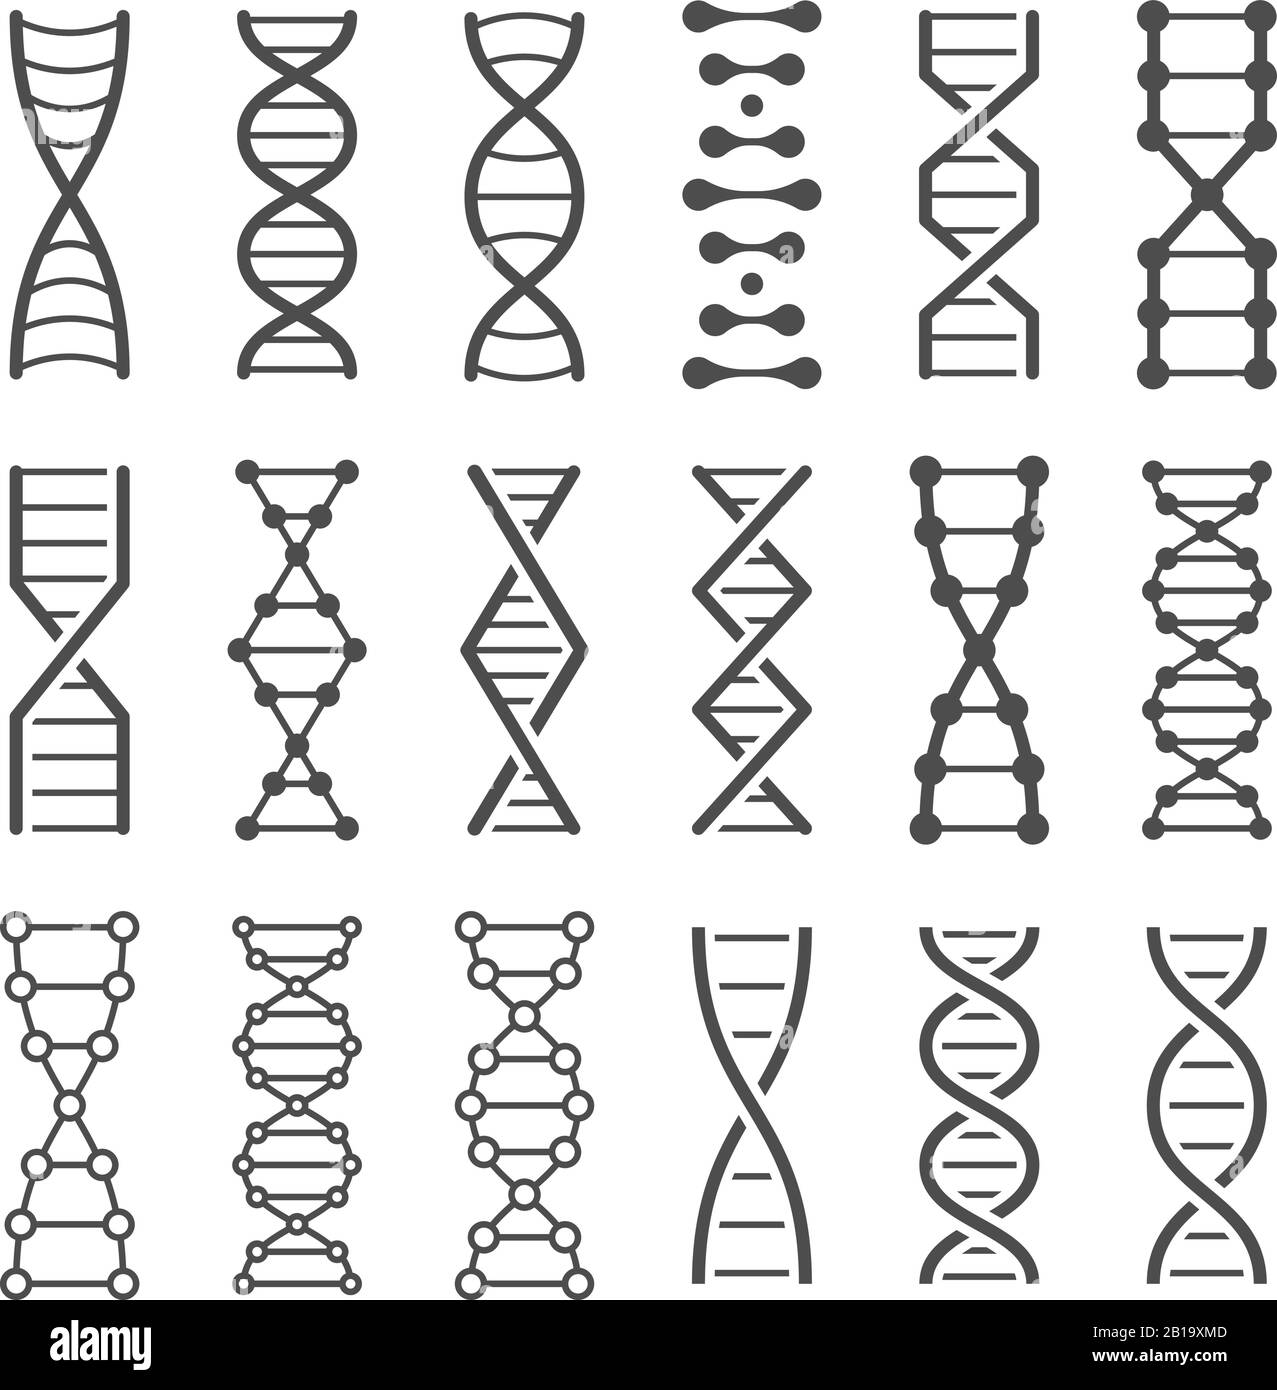 DNA-Spiralsymbol. Humangenetischer Code, Genom-Modell und biologischer Laborstringspiralen-Vektorsymbole festgelegt Stock Vektor